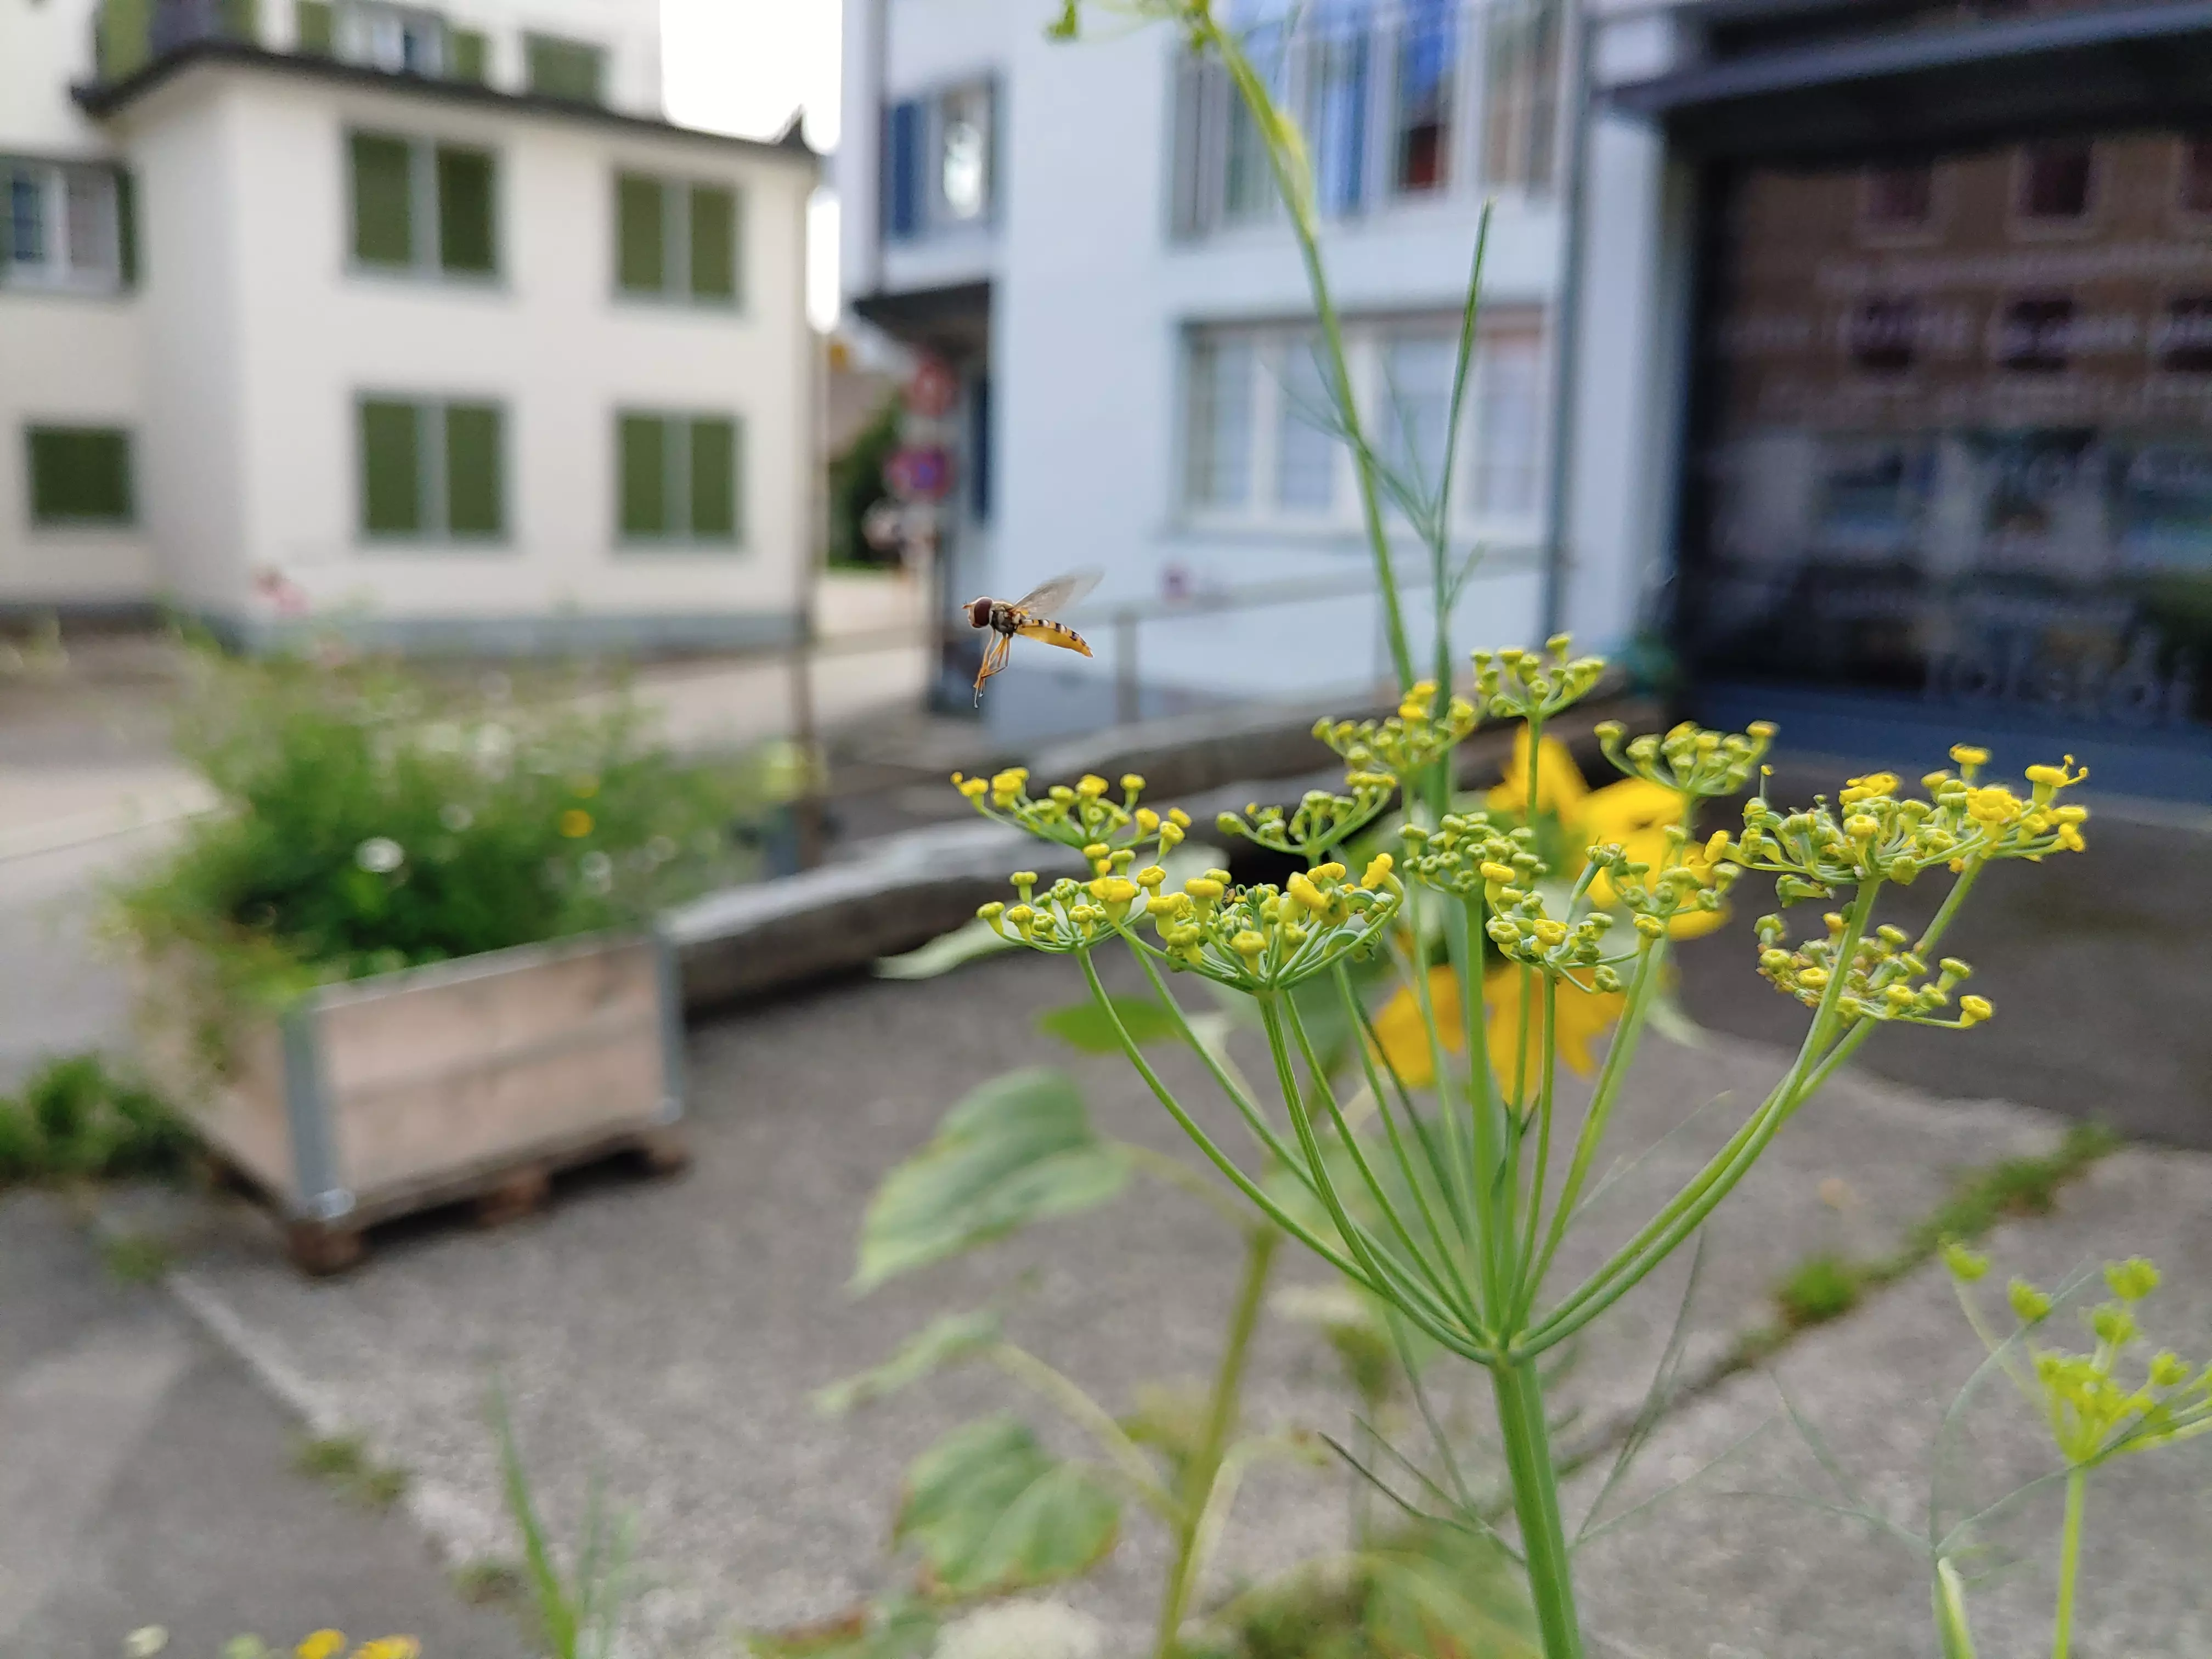 Viele Wildbienen und Insekten erfreuten sich im Sommer an der Blütenpracht. Foto: Mathias Wenger